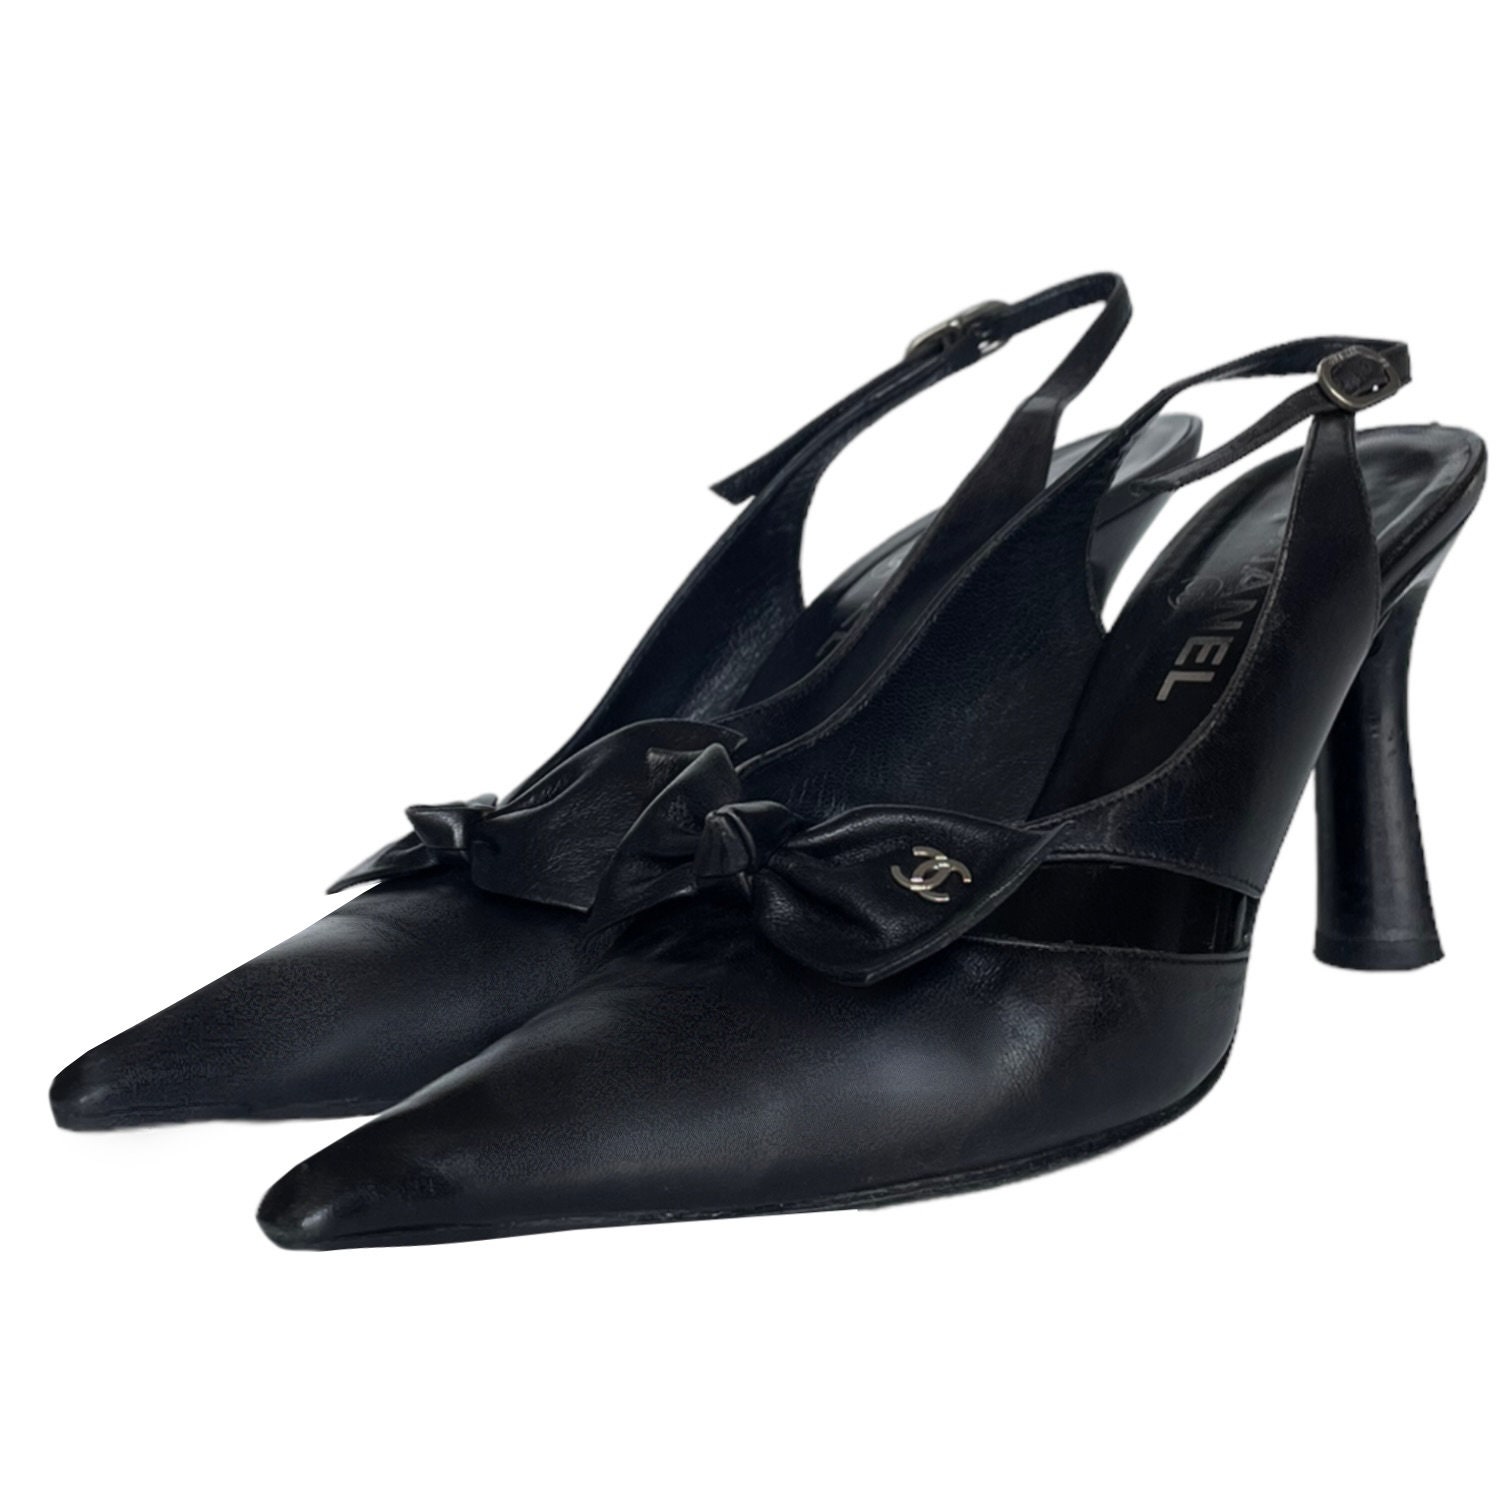 LOUIS VUITTON Women's Sandals Black Patent Leather Market as 37.5 7.5US